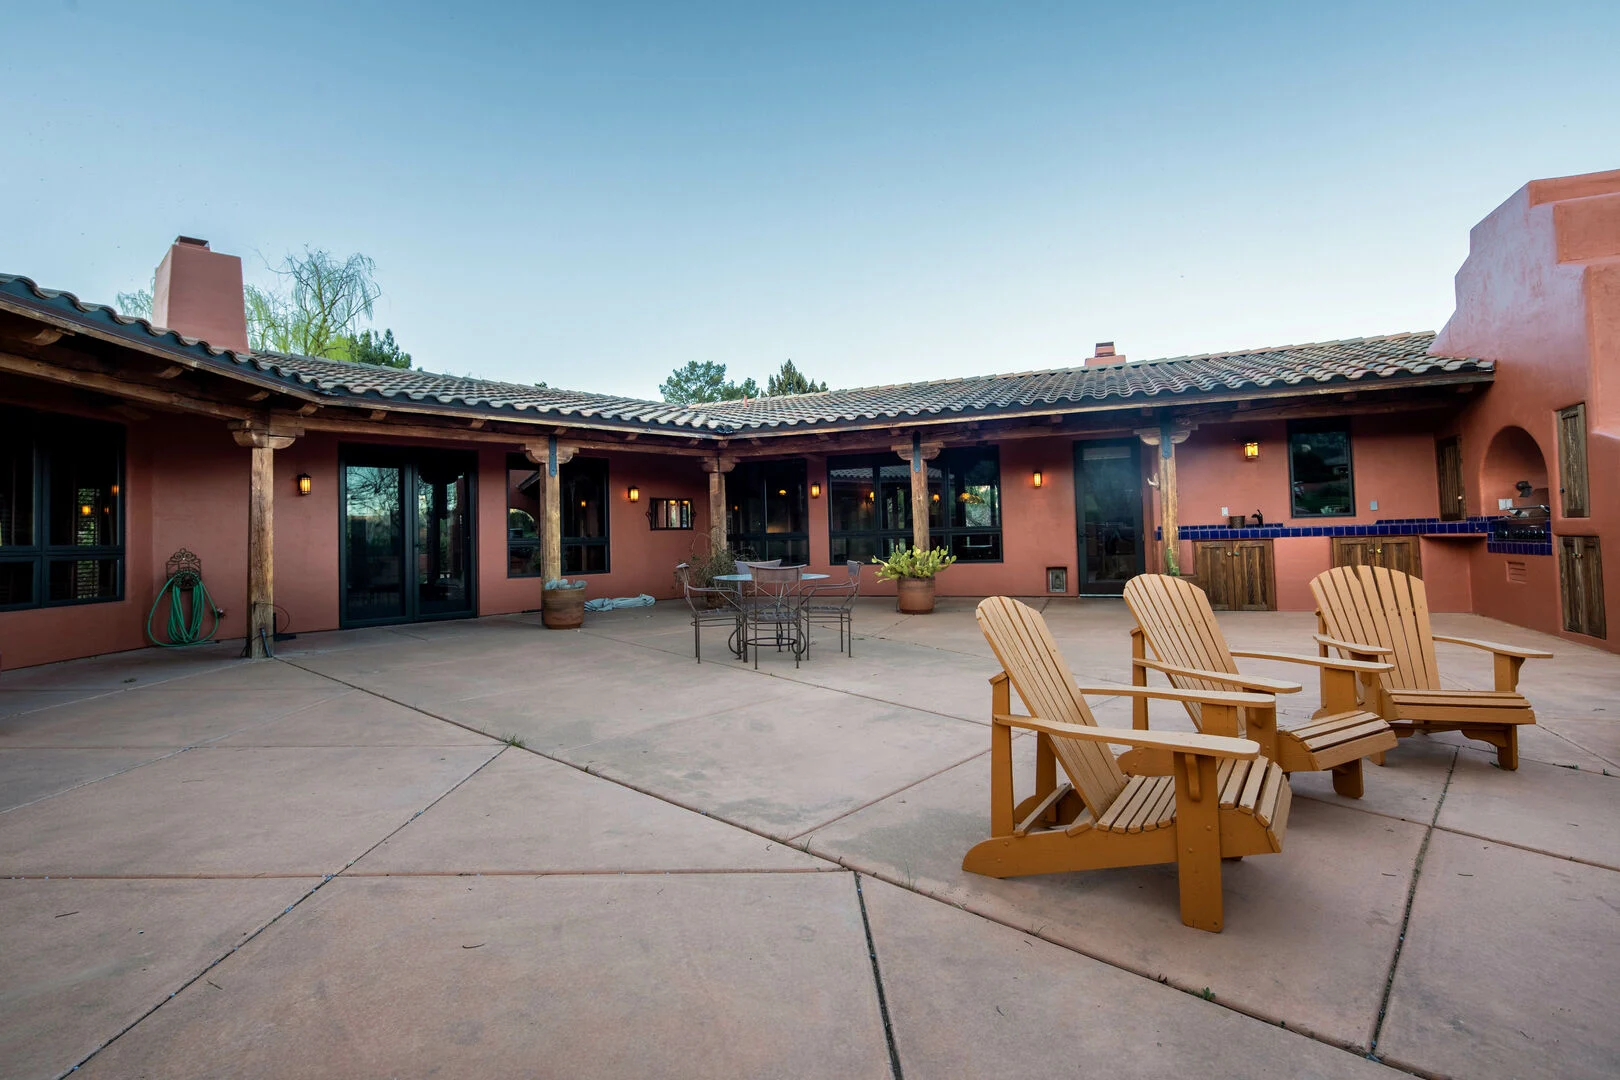 Houses to Rent in Sedona Arizona